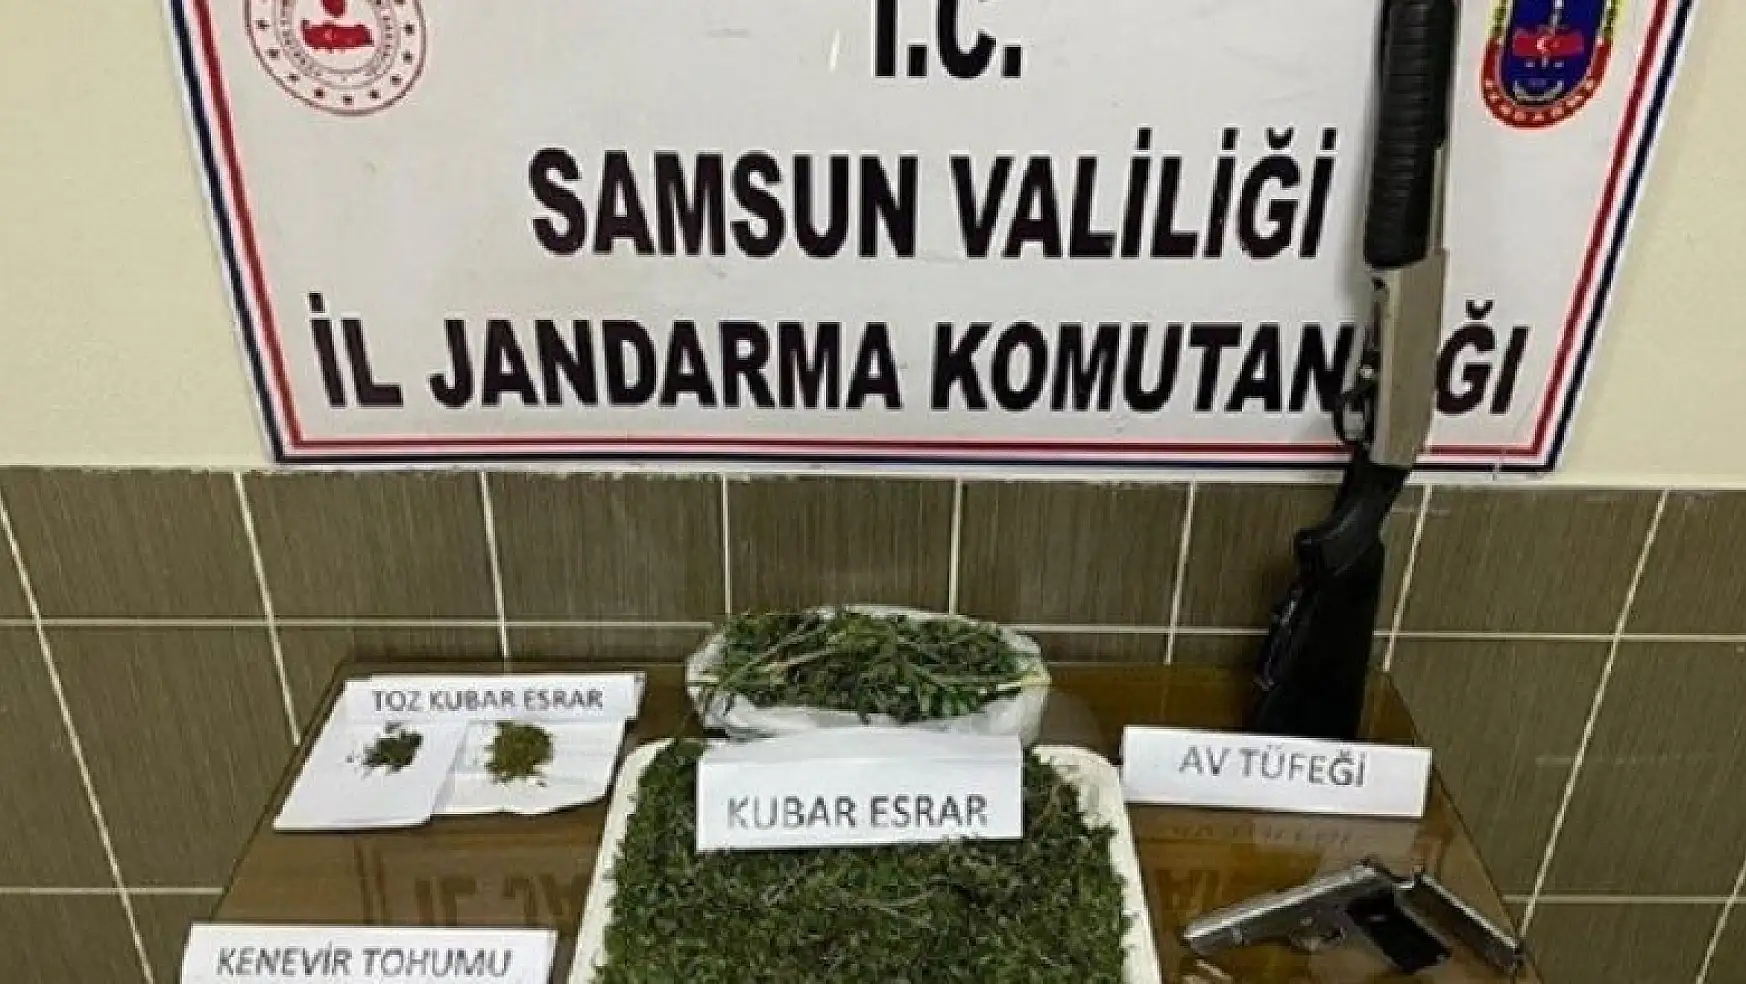 Samsun'da 5,1 kilo kubar esrar ve 4 bin kök kenevir bitkisi ele geçirildi: 15 gözaltı